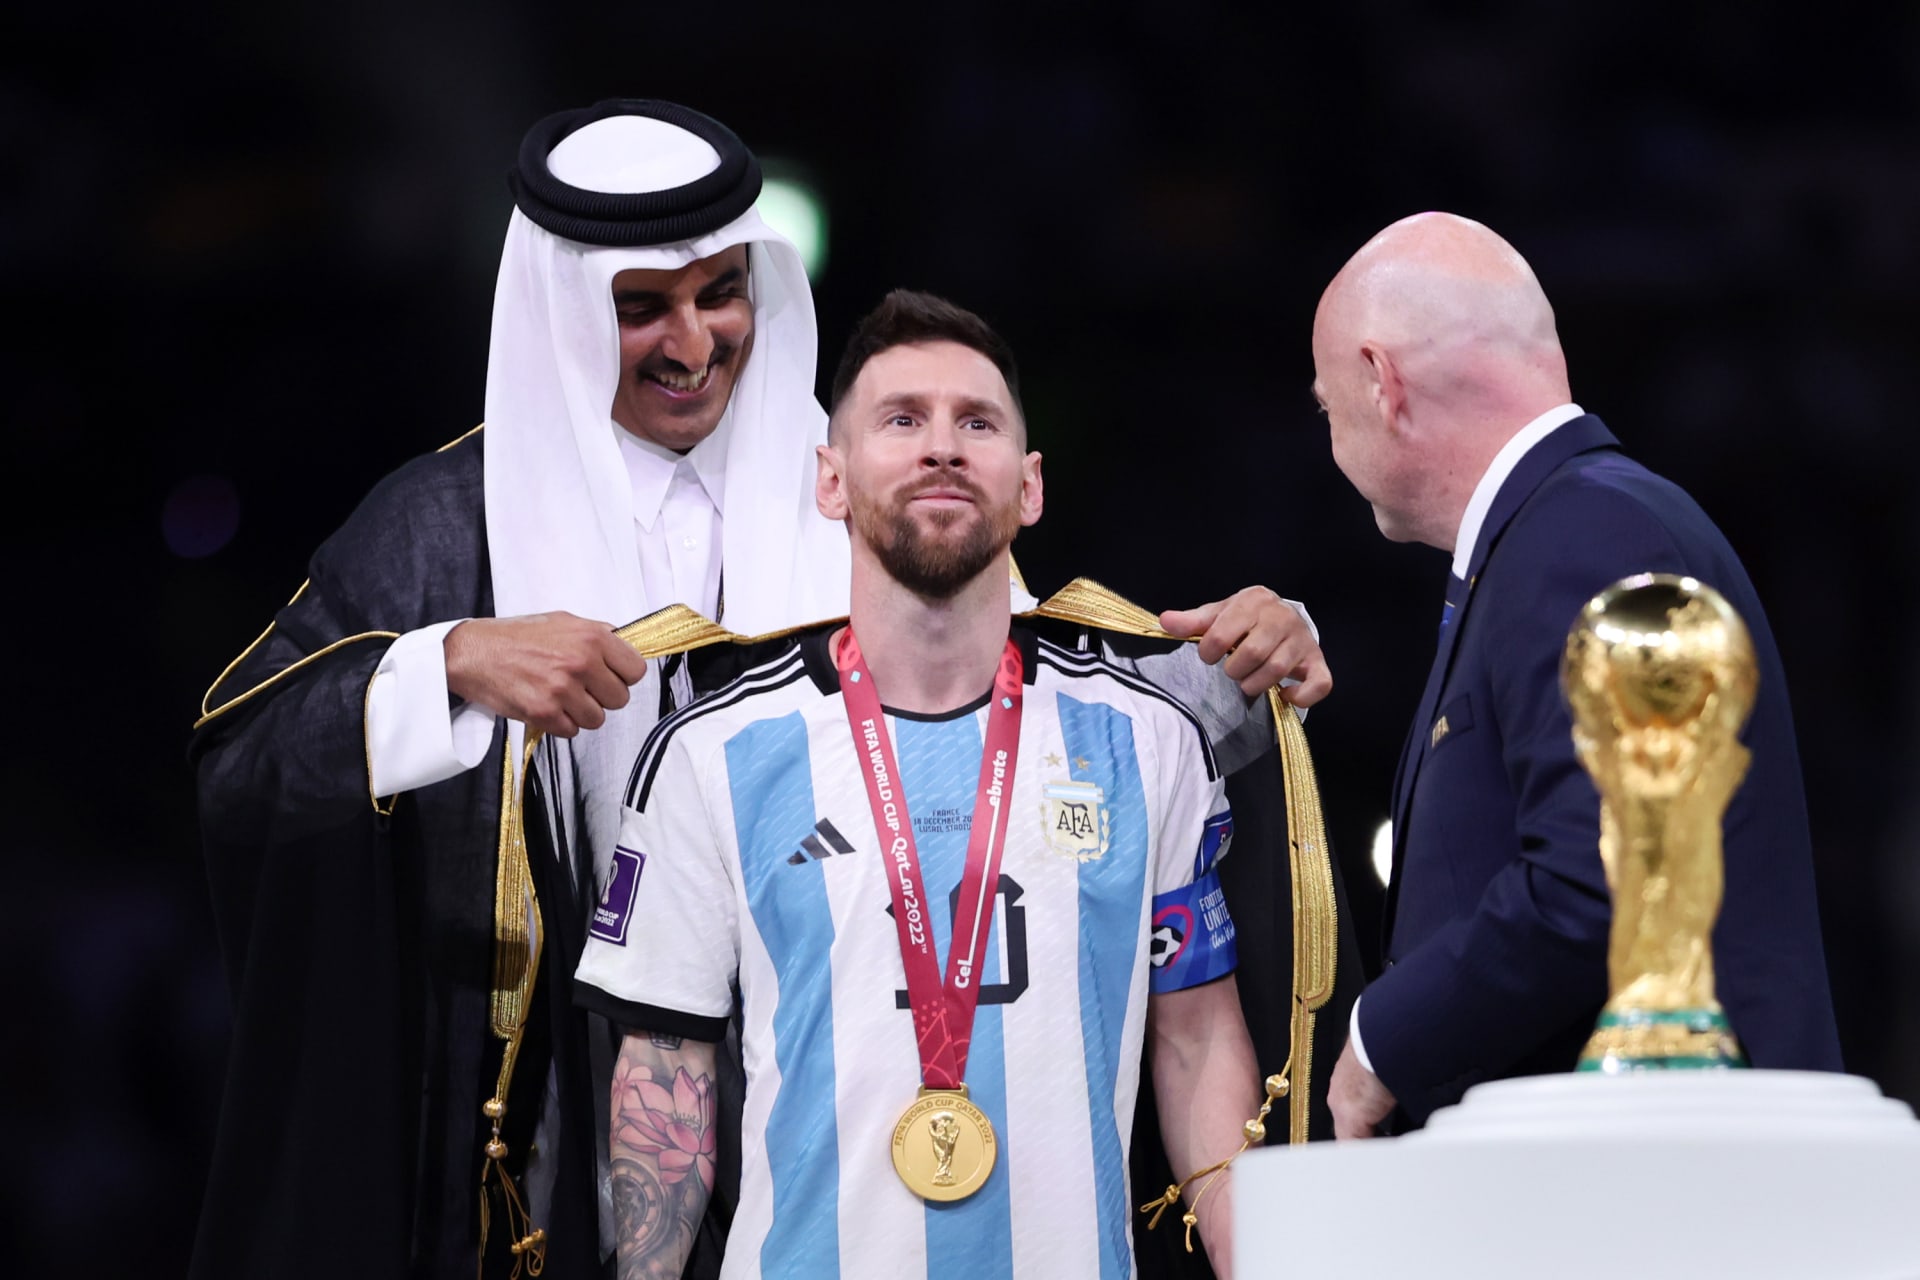 Ausbreitung "Bisht-Fieber" Unter den ausländischen Fans, nachdem Messi es getragen hat... Welchen Status hat er in Katar?